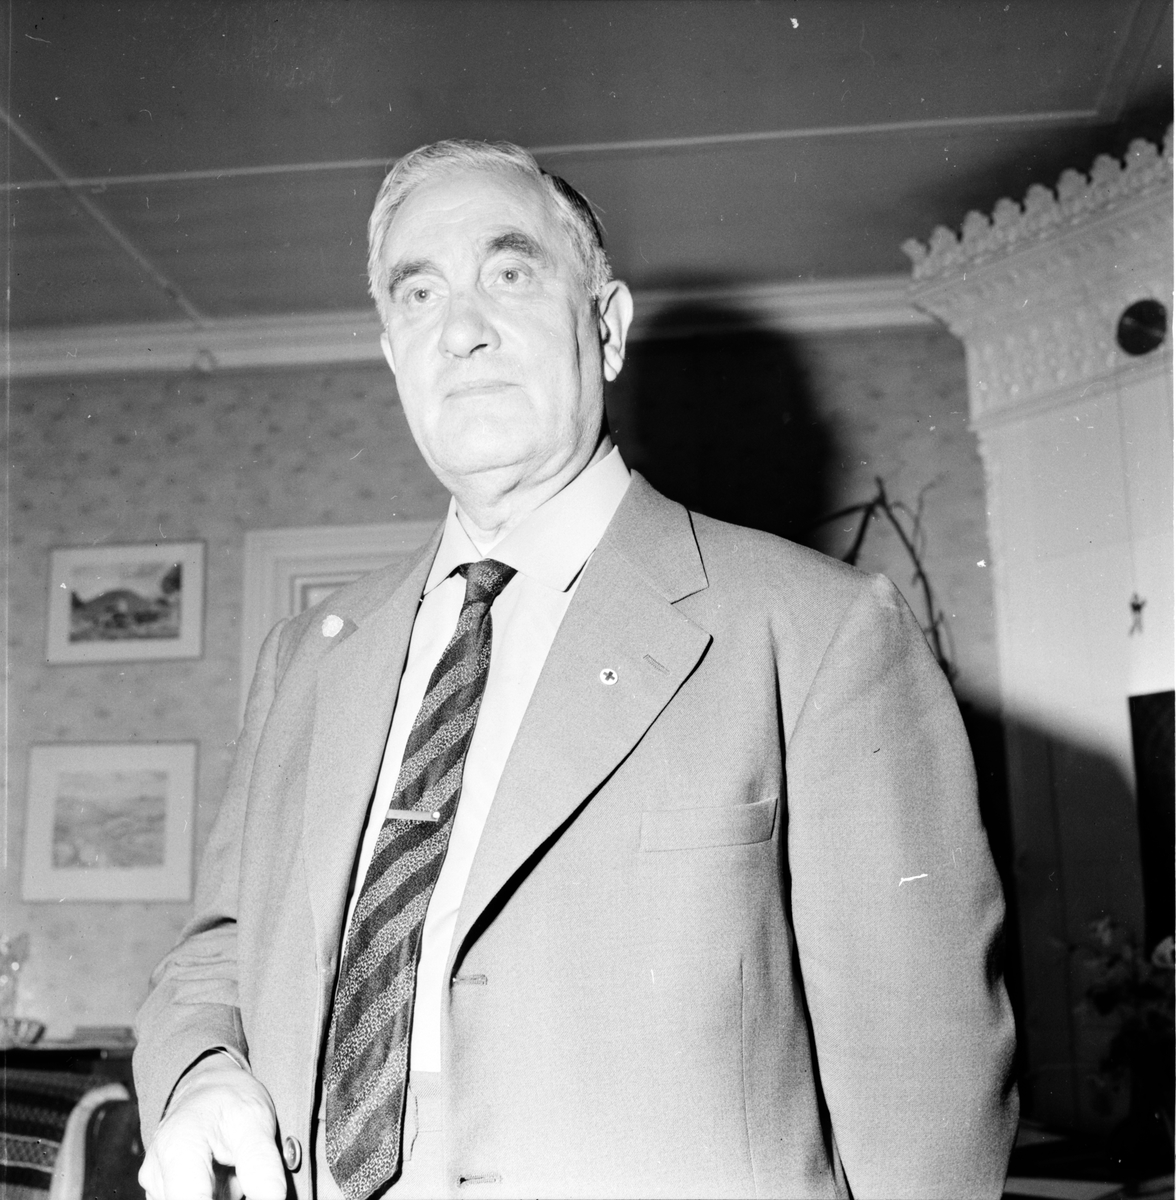 Fredriksson Nathan, Distriktföreståndare,
25 September 1963